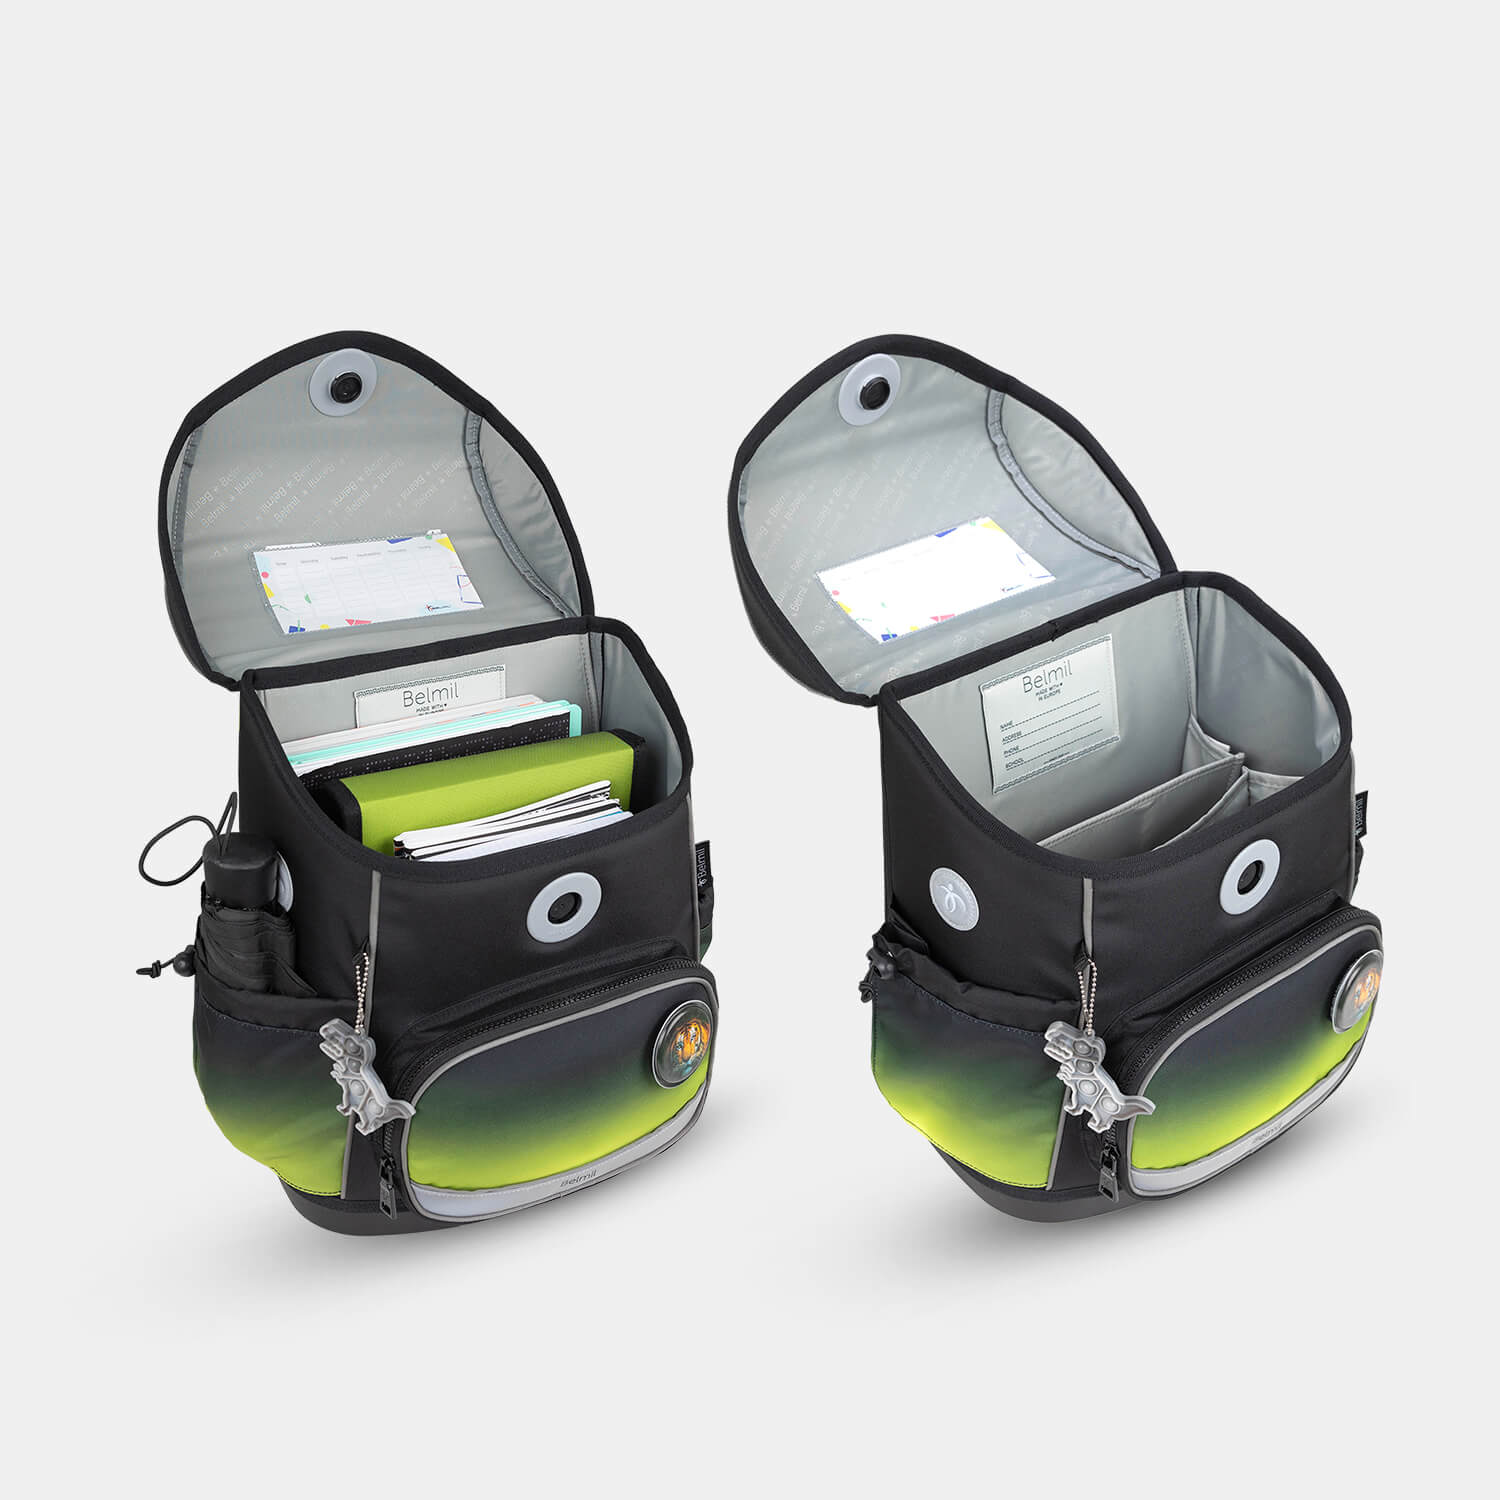 Compact Plus Black Green Schoolbag set 5pcs.